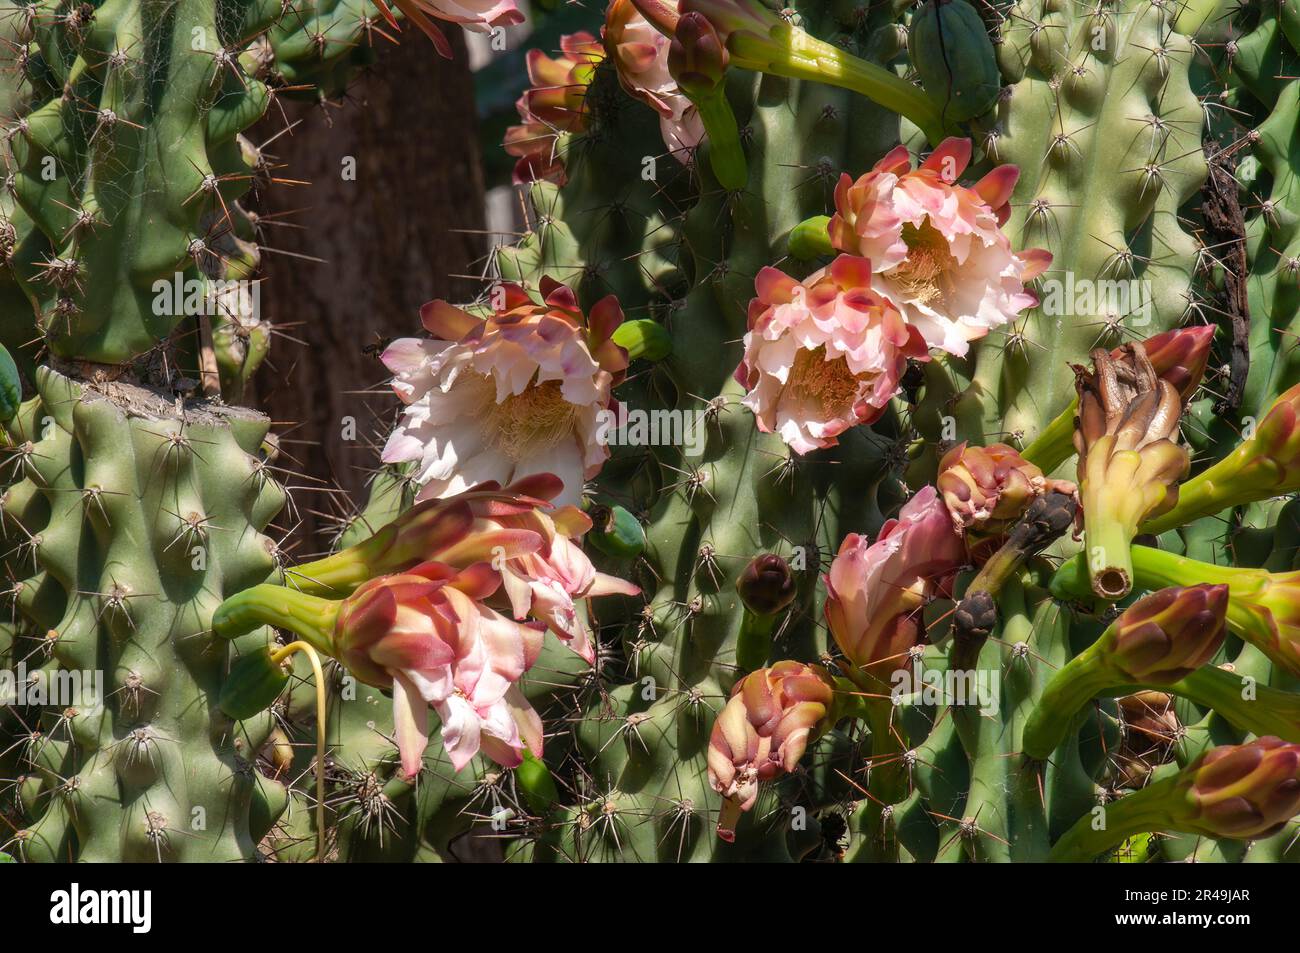 Sydney Australien, Nahaufnahme der Blüten eines cereus peruvianus monstrosus cactus Stockfoto